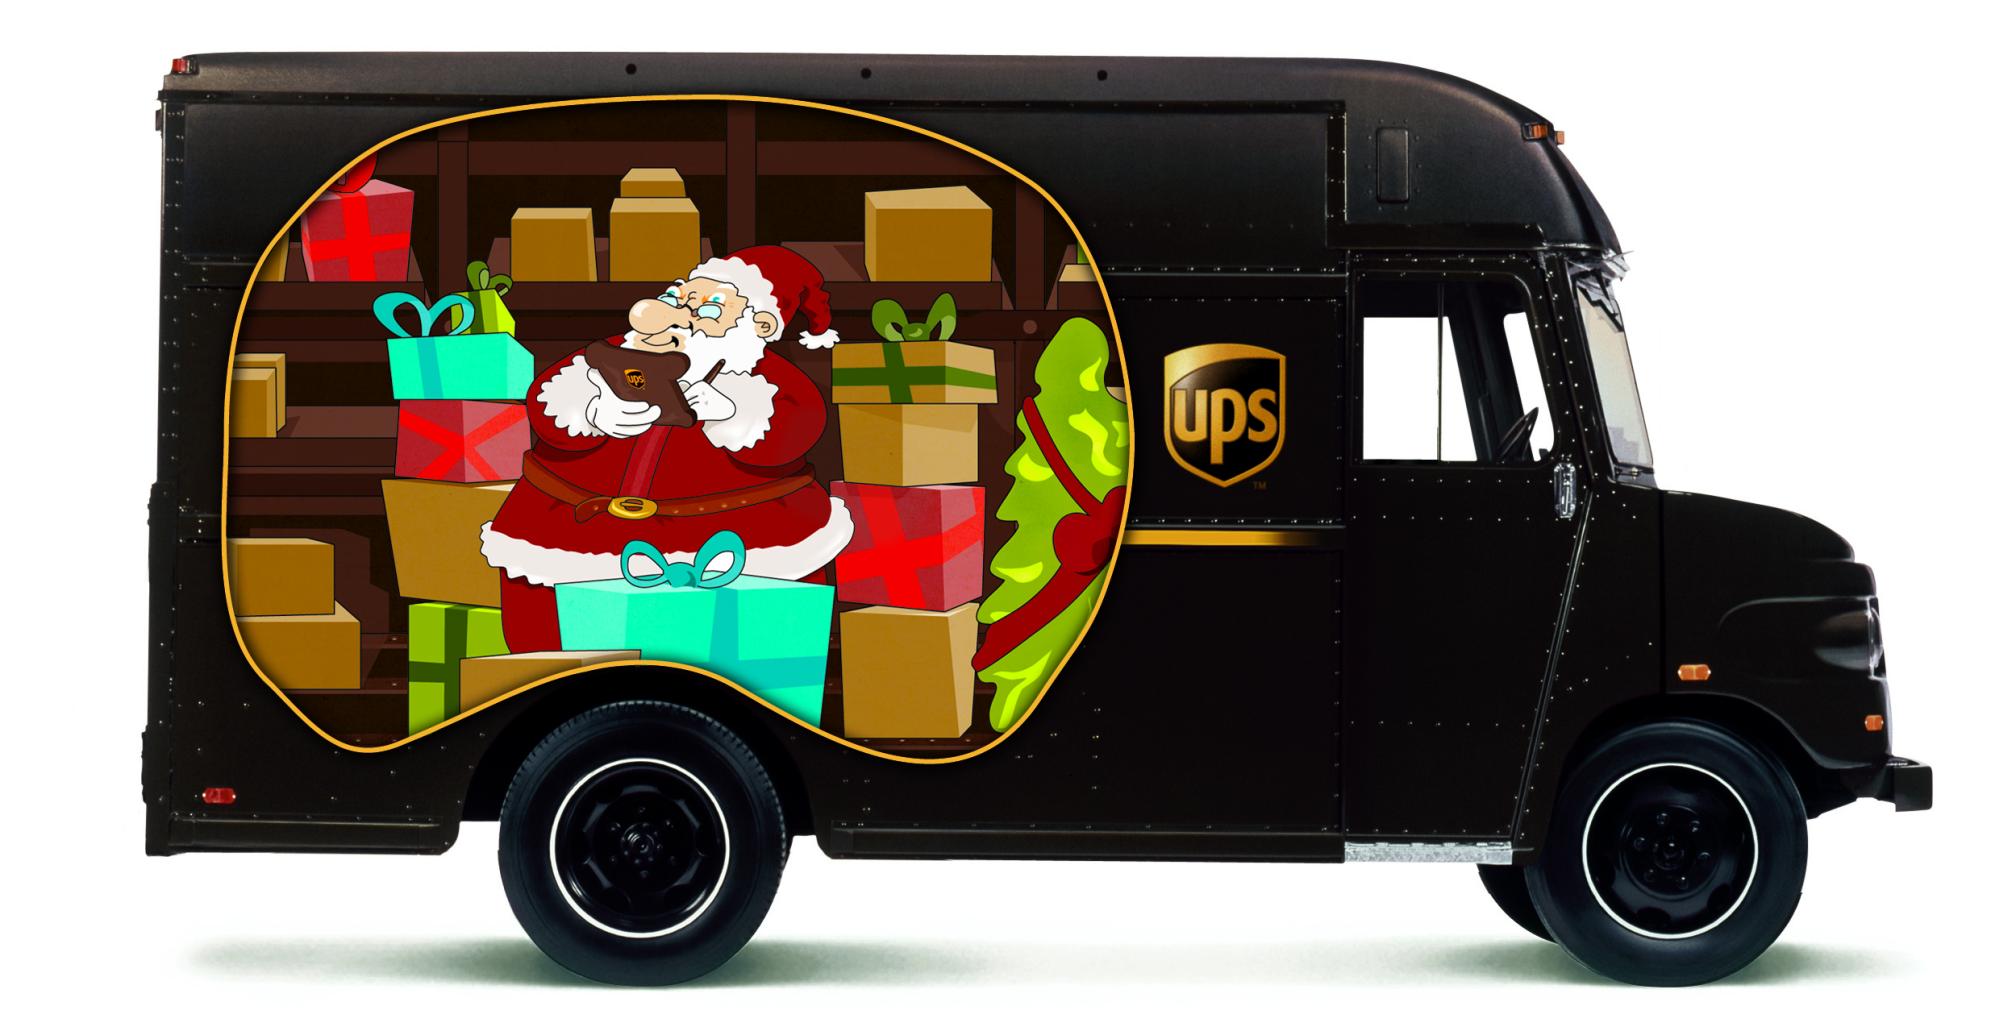 UPS hilft dem Weihnachtsmann UPS Mitarbeiter sammeln Spielzeug, das